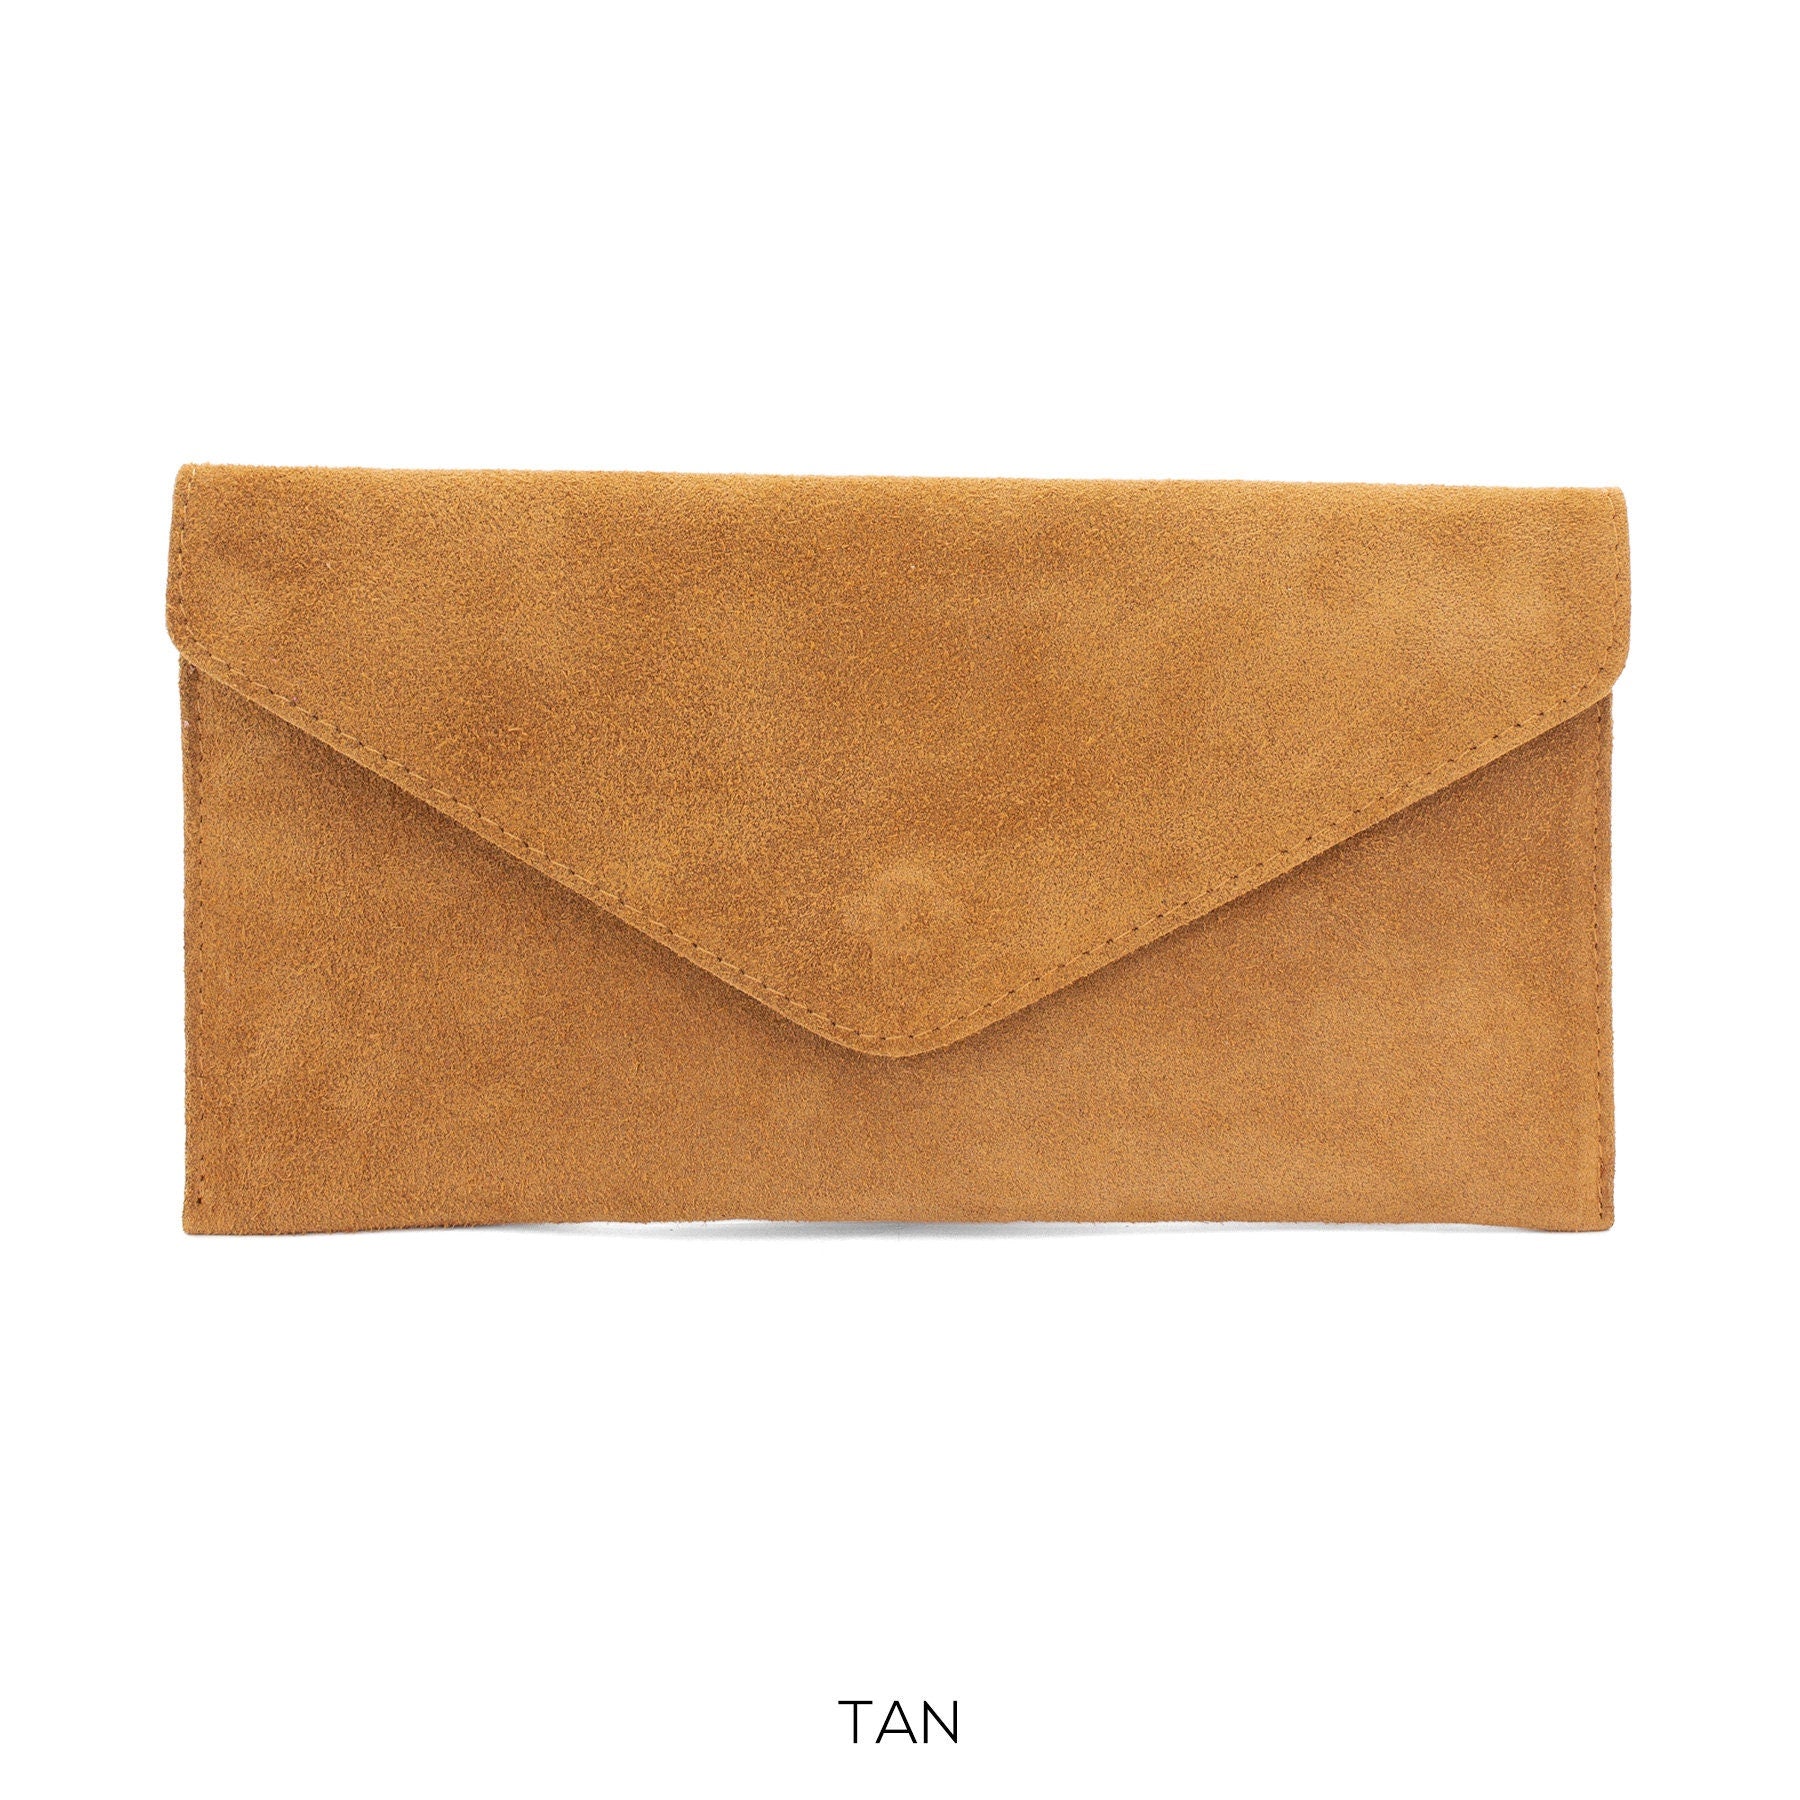 Tan Suede Envelope Clutch Bag